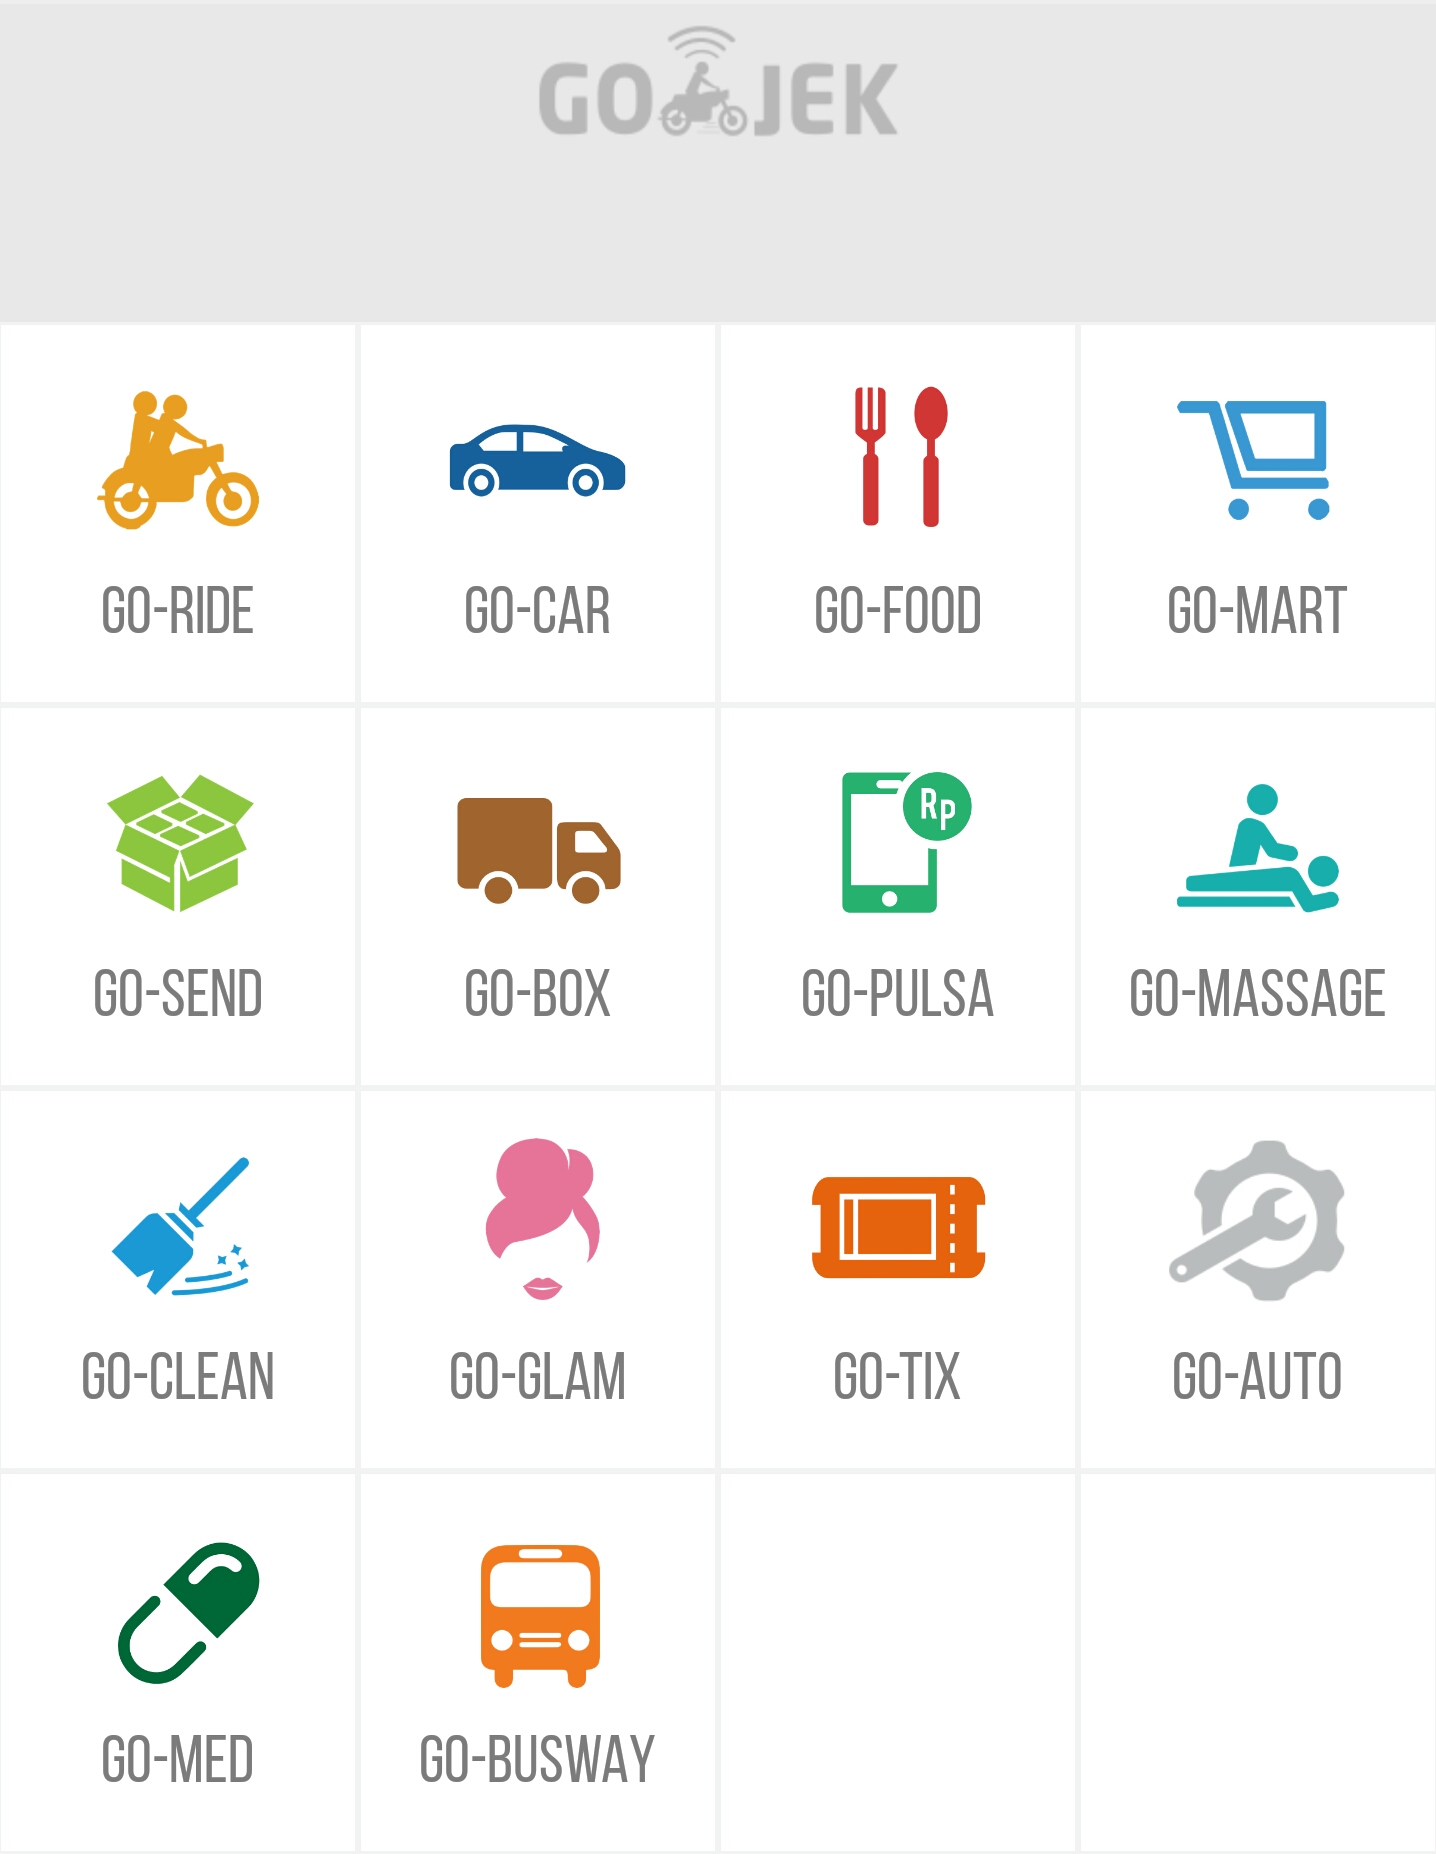 Kecanggihan aplikasi GO-JEK sebagai startup di bidang transportasi, merupakan screenshot pribadi.